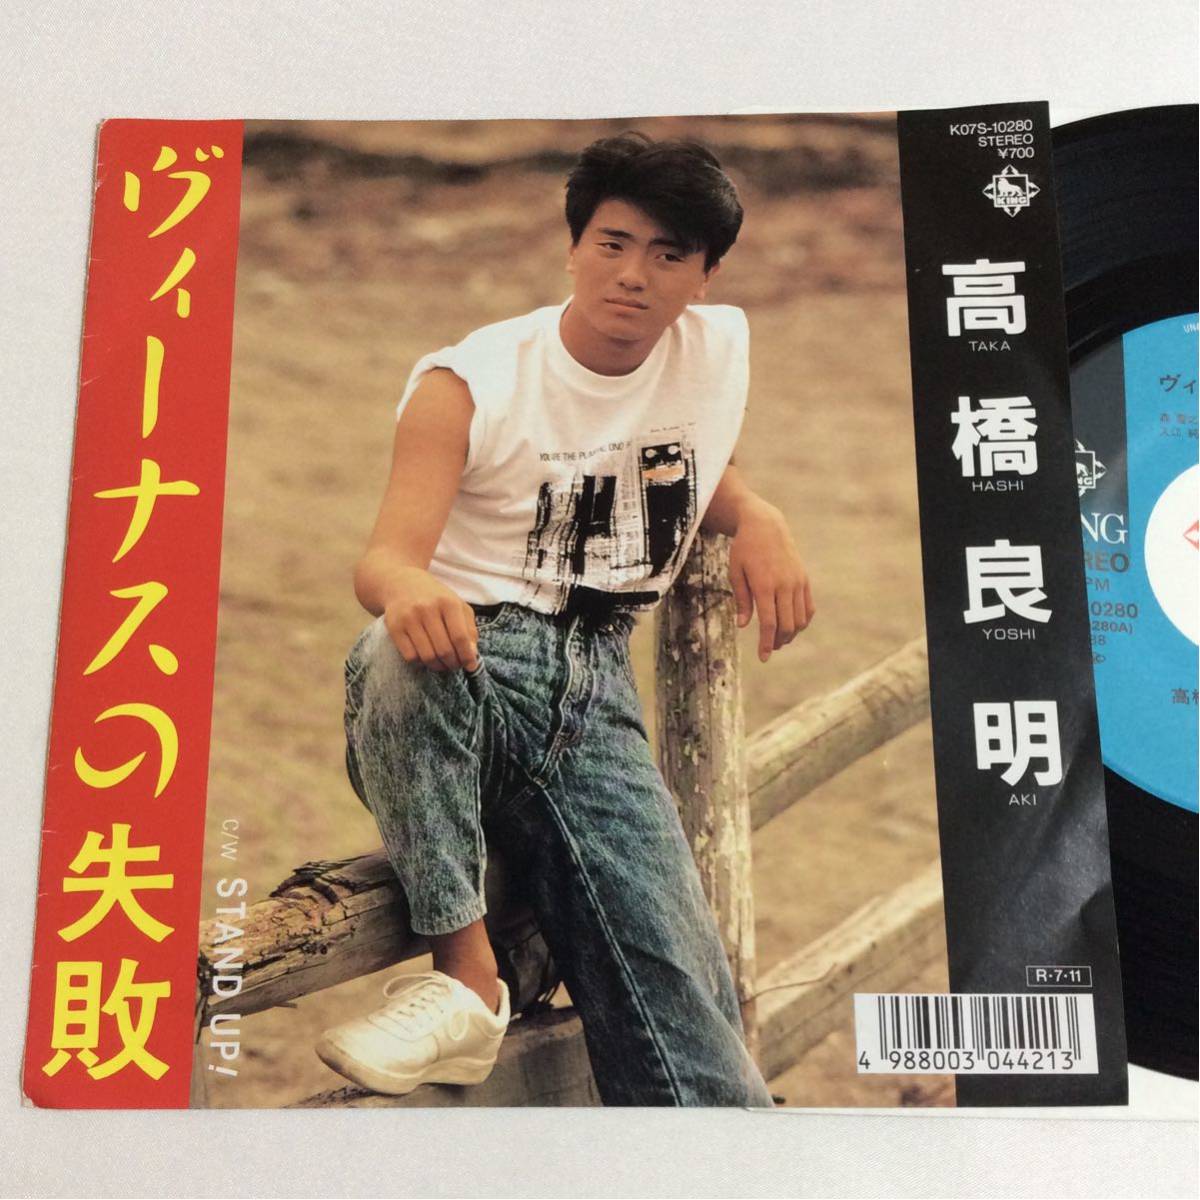 高橋良明 / ヴィーナスの失敗 / STAND UP! / 7inch レコード / EP / 1988 / WINK / 入江純_画像1